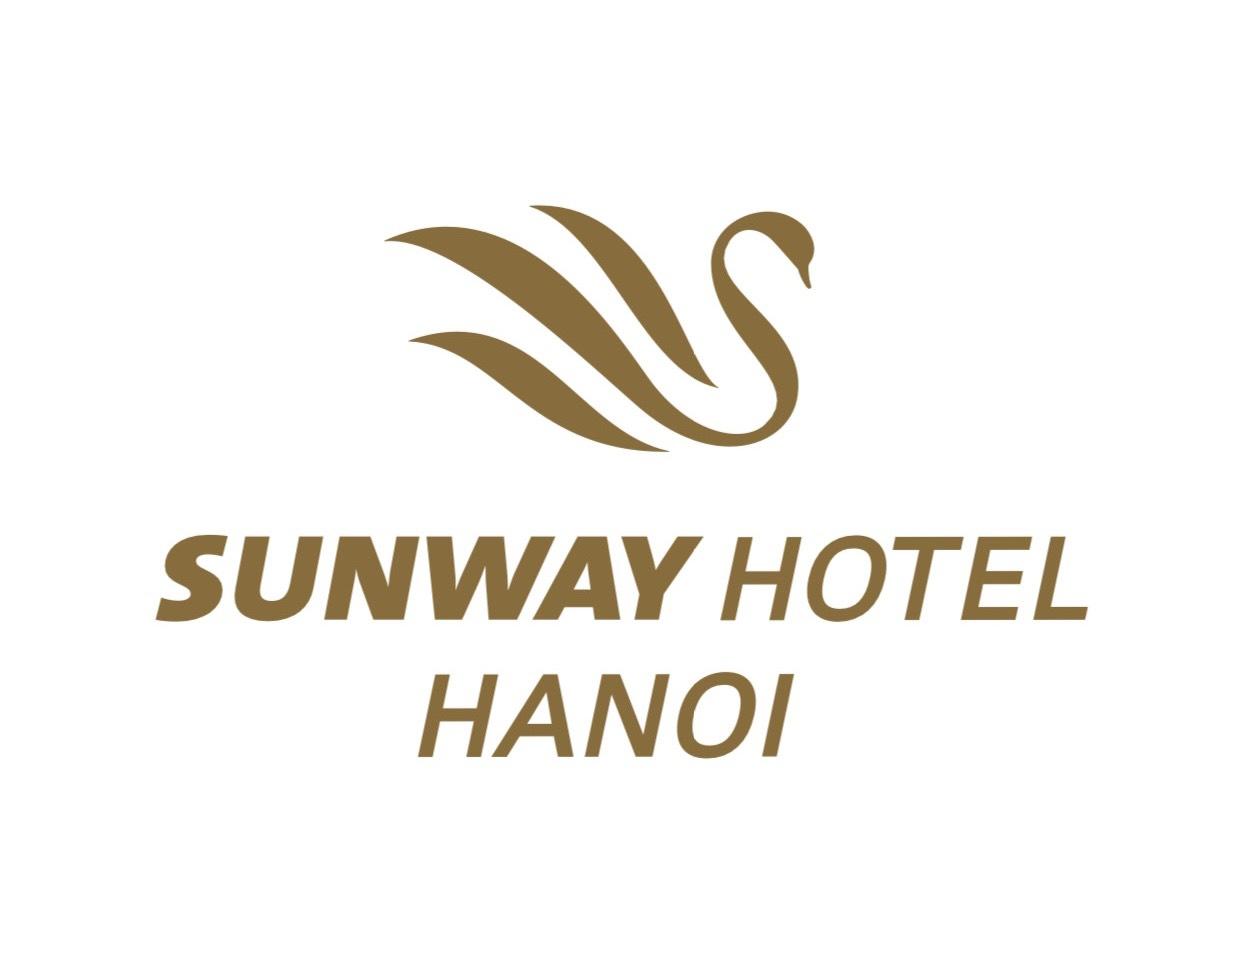 Sunway Hotel HaNoi